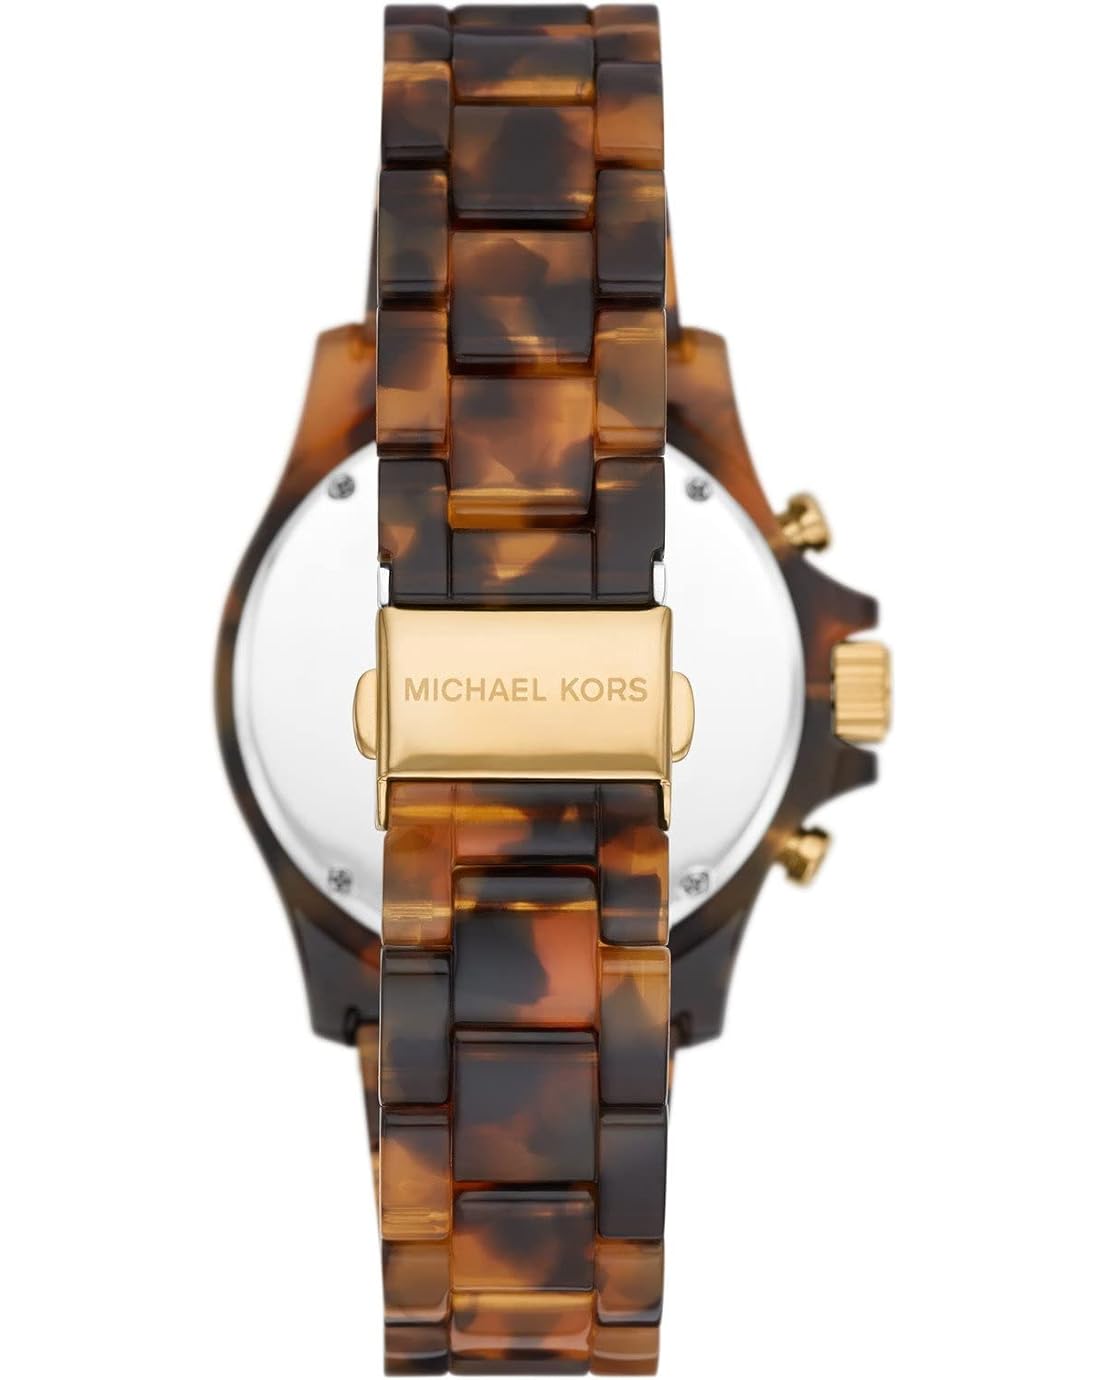 마이클코어스 Michael Kors MK7239 - Everest Chronograph Watch